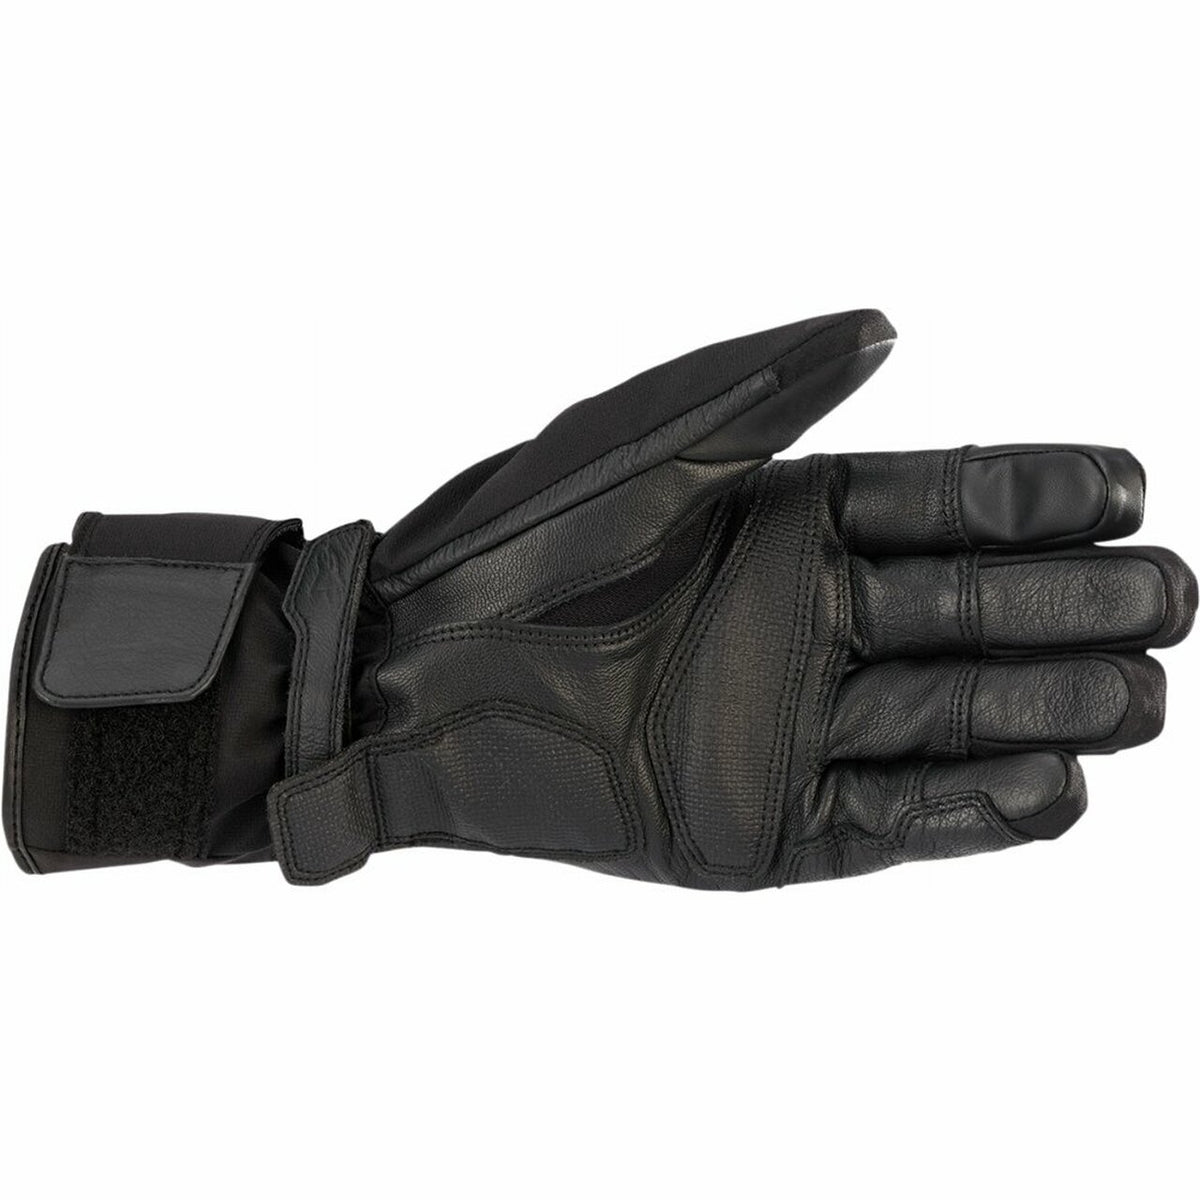 Alpinestars Range 2-in-1 Gore-Tex Gloves